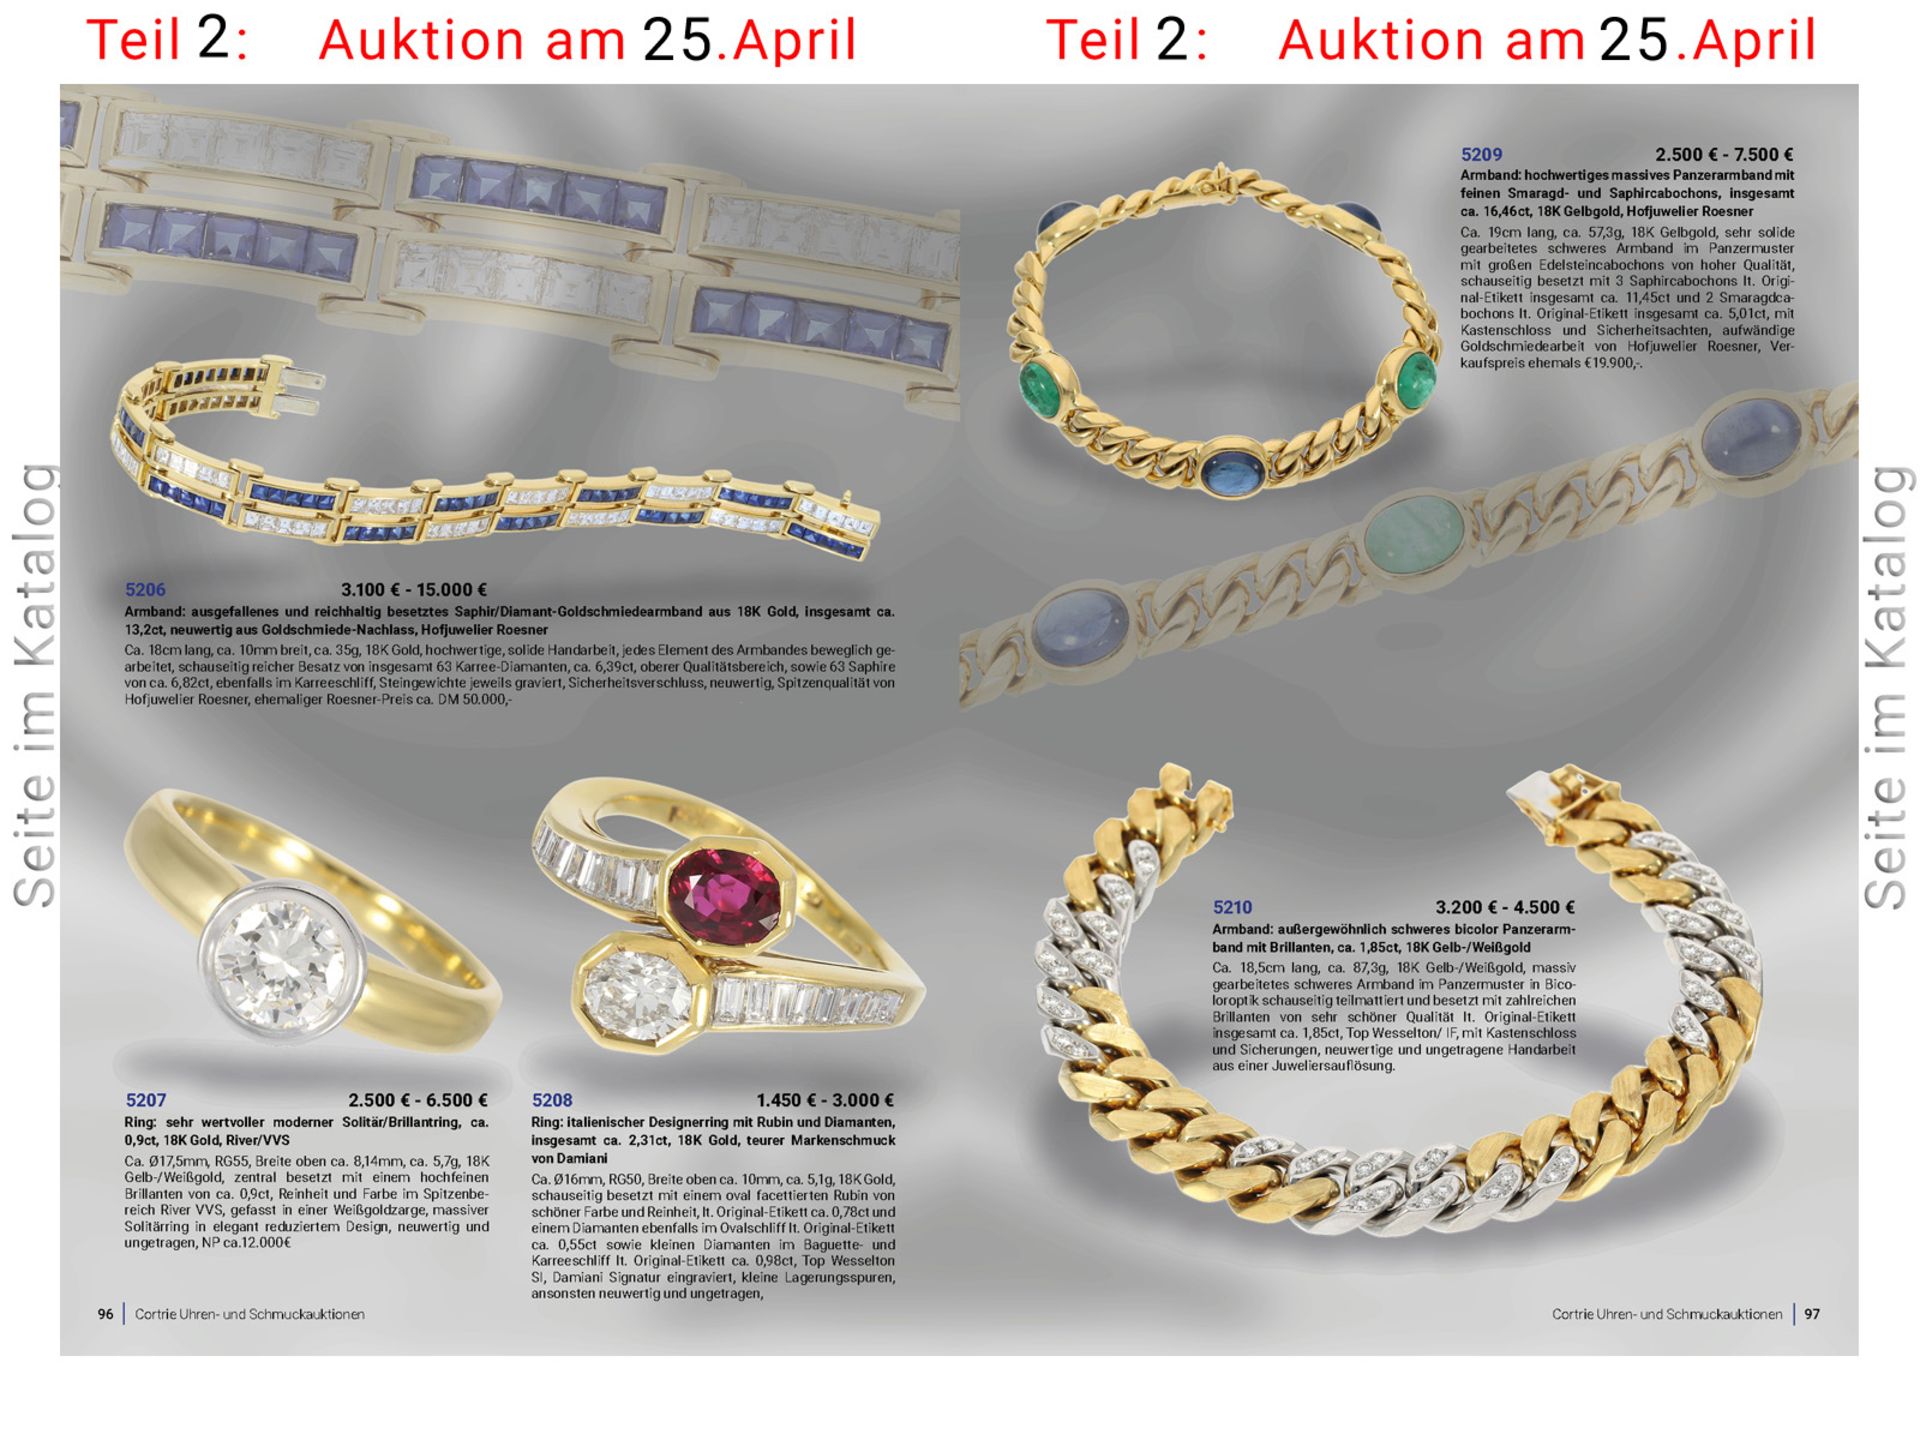 Ring: italienischer Designerring mit Rubin und Diamanten, insgesamt ca. 2,31ct, 18K Gold, teurer - Bild 4 aus 4